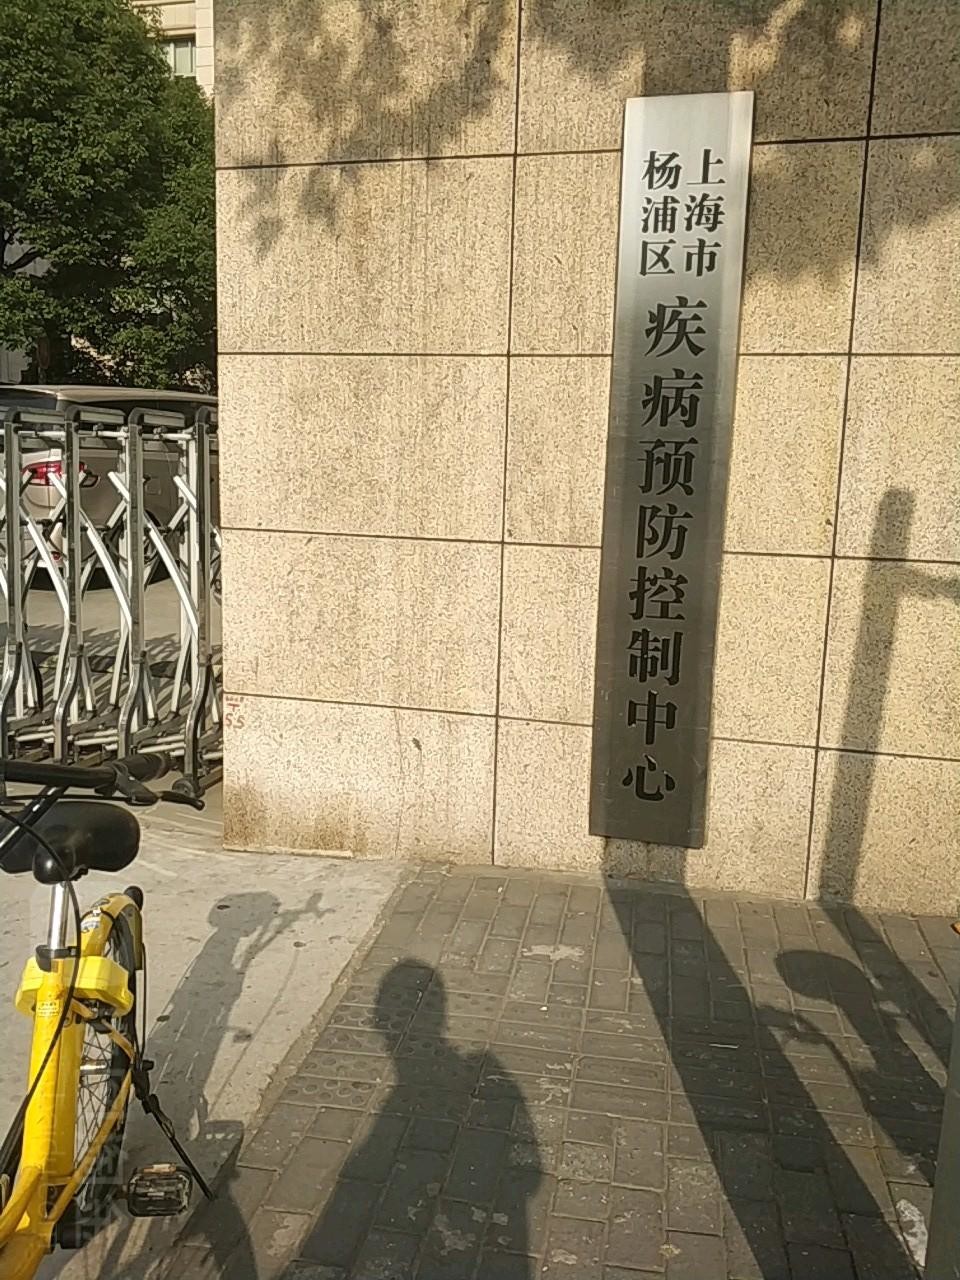 kasus perusahaan terbaru tentang Pusat Pengendalian dan Pencegahan Penyakit Distrik Yangpu Shanghai